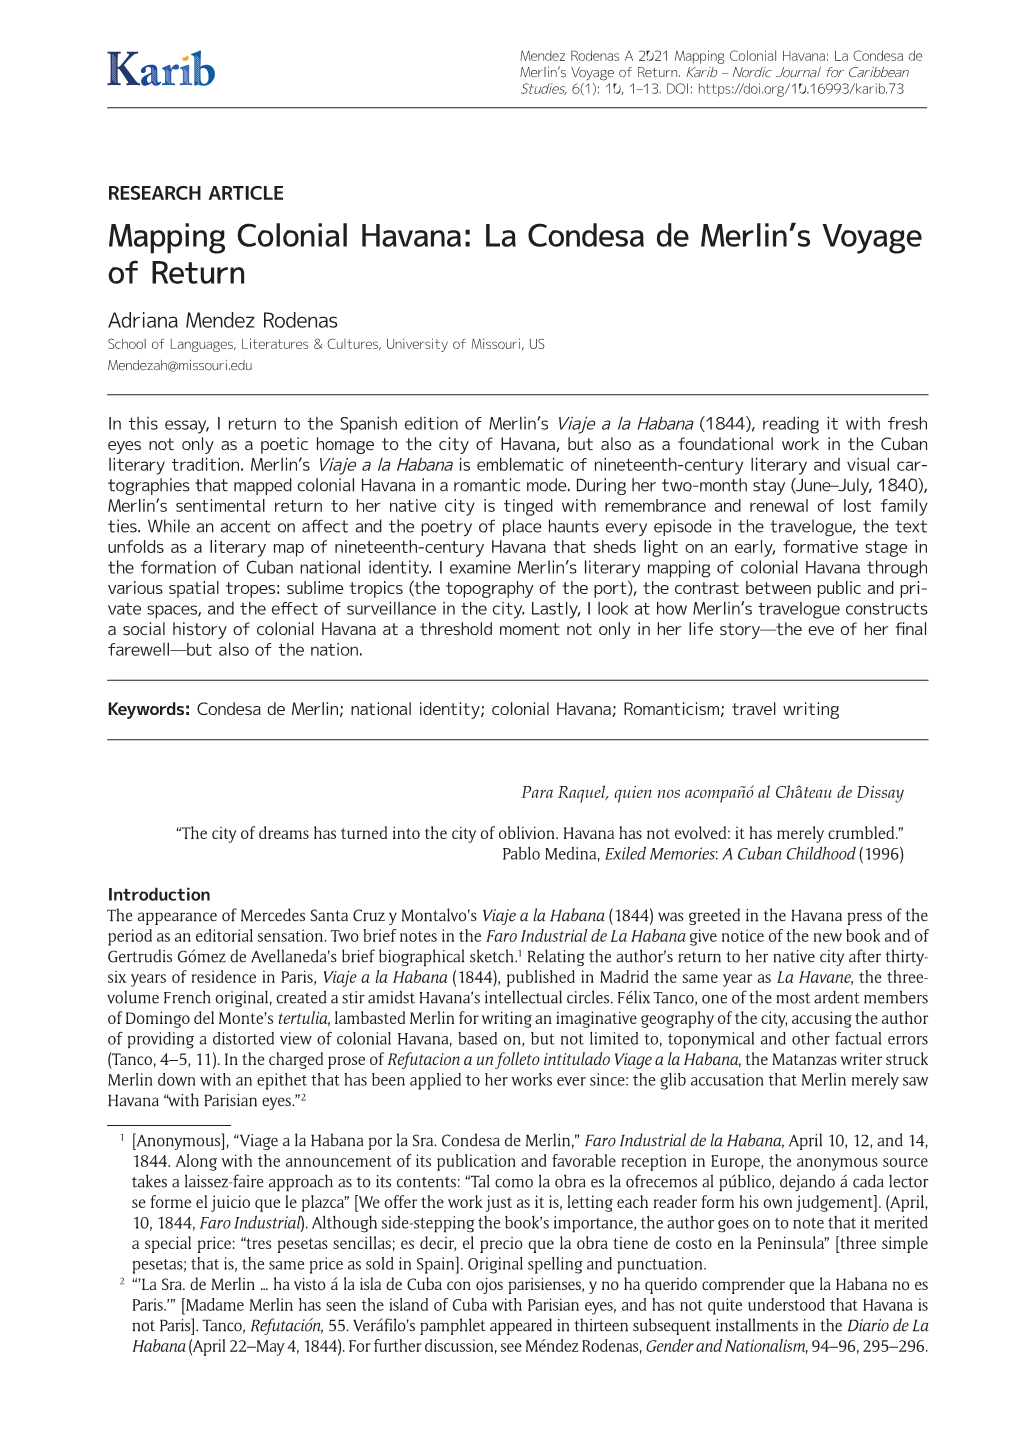 Mapping Colonial Havana: La Condesa De Merlin's Voyage of Return